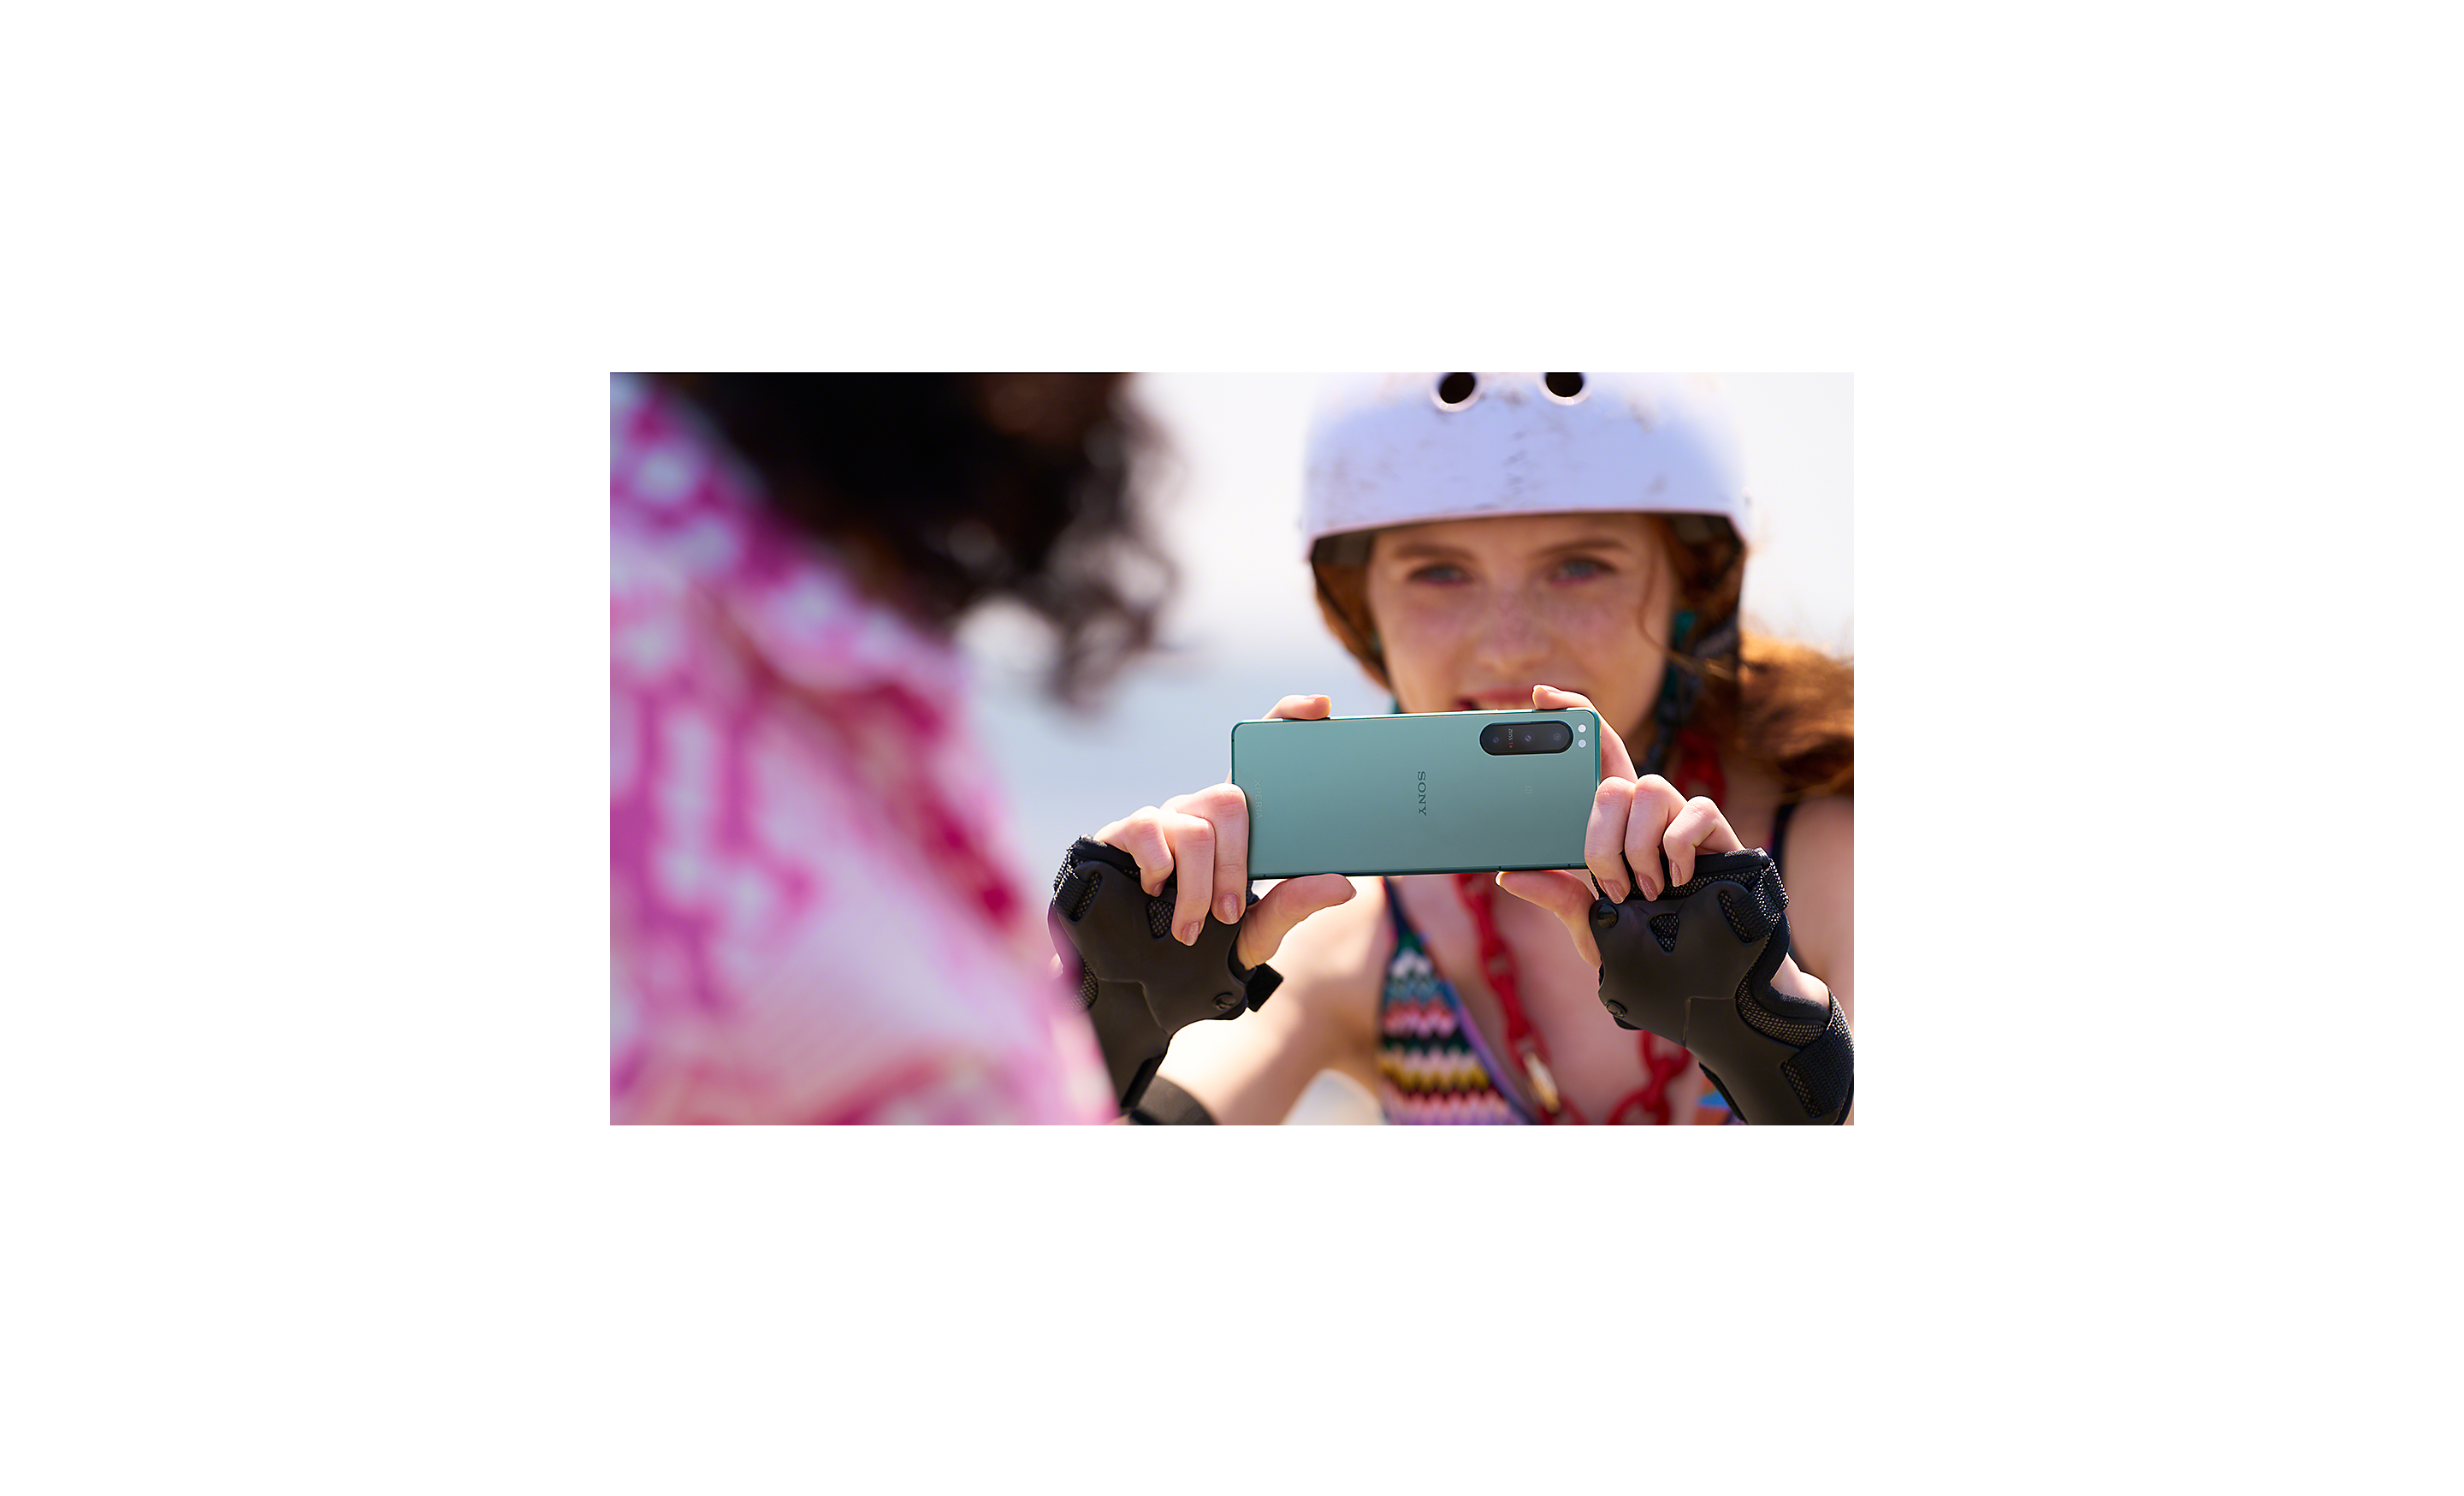 Žena na korčuliach používajúca smartfón Xperia 5 IV na nahrávanie videa